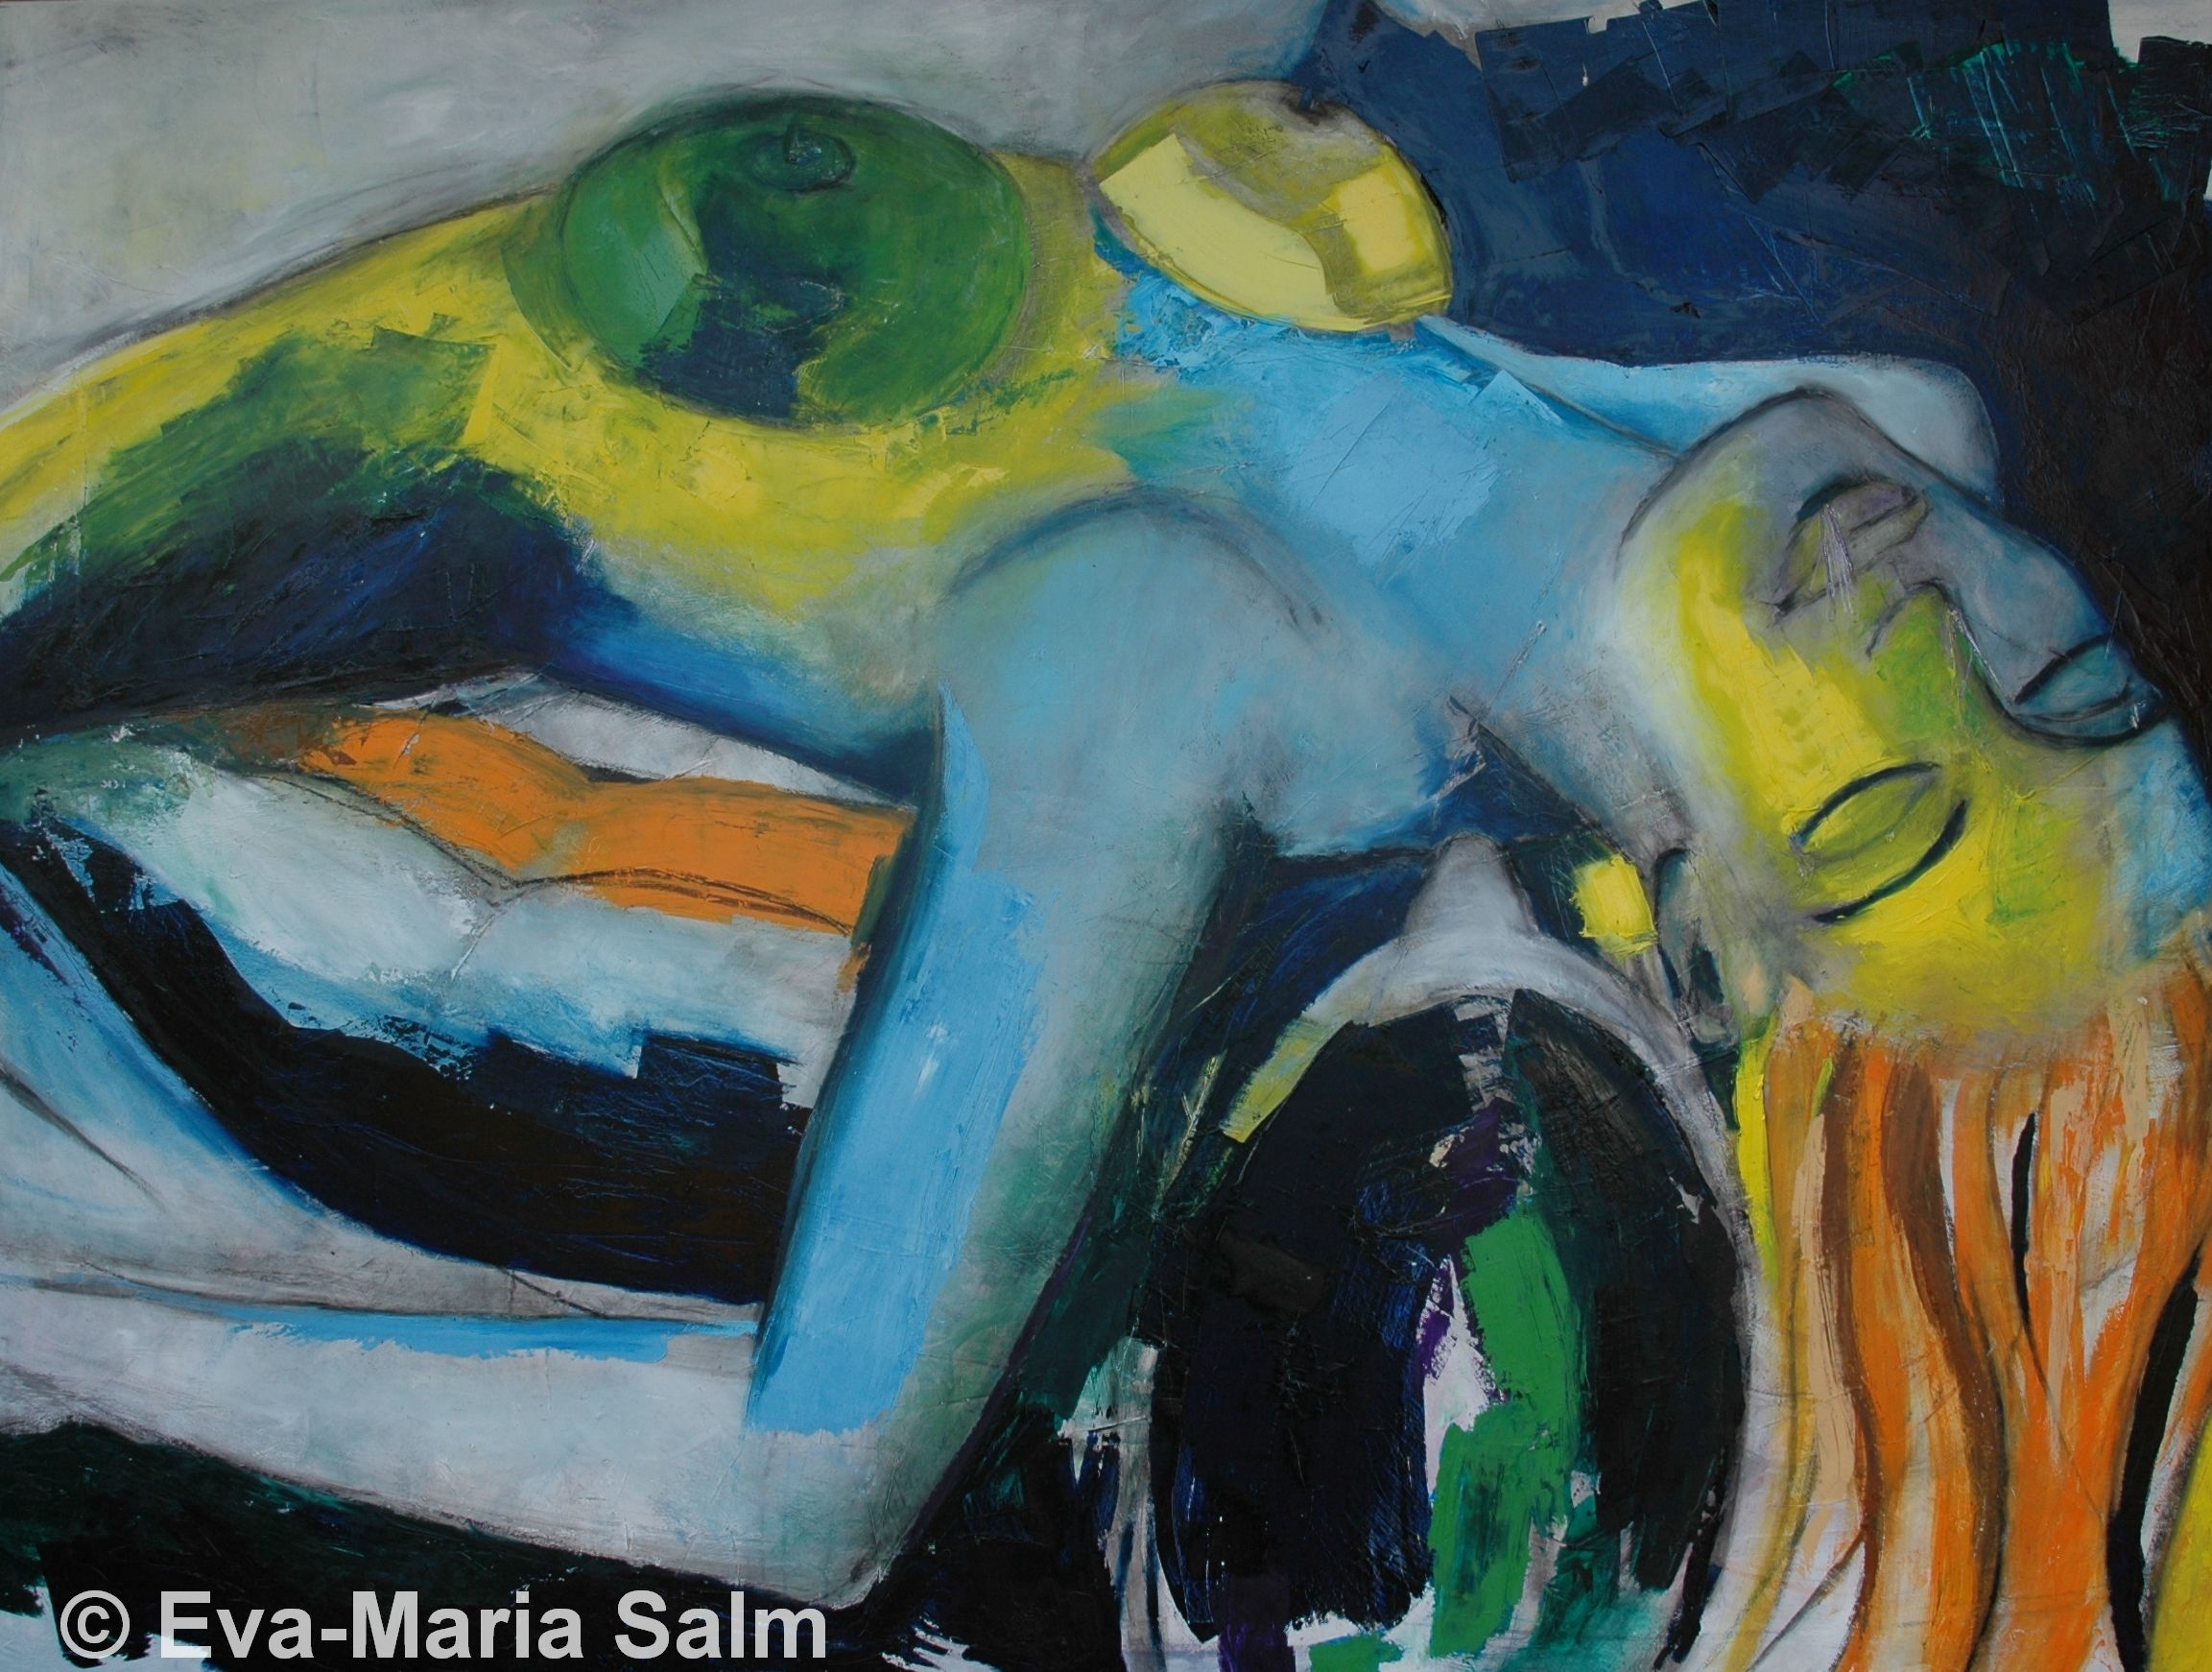 Eva-Maria Salm | Akt XXXI turnaround | 2008 | Öl auf Leinwand | 150 x 200 cm